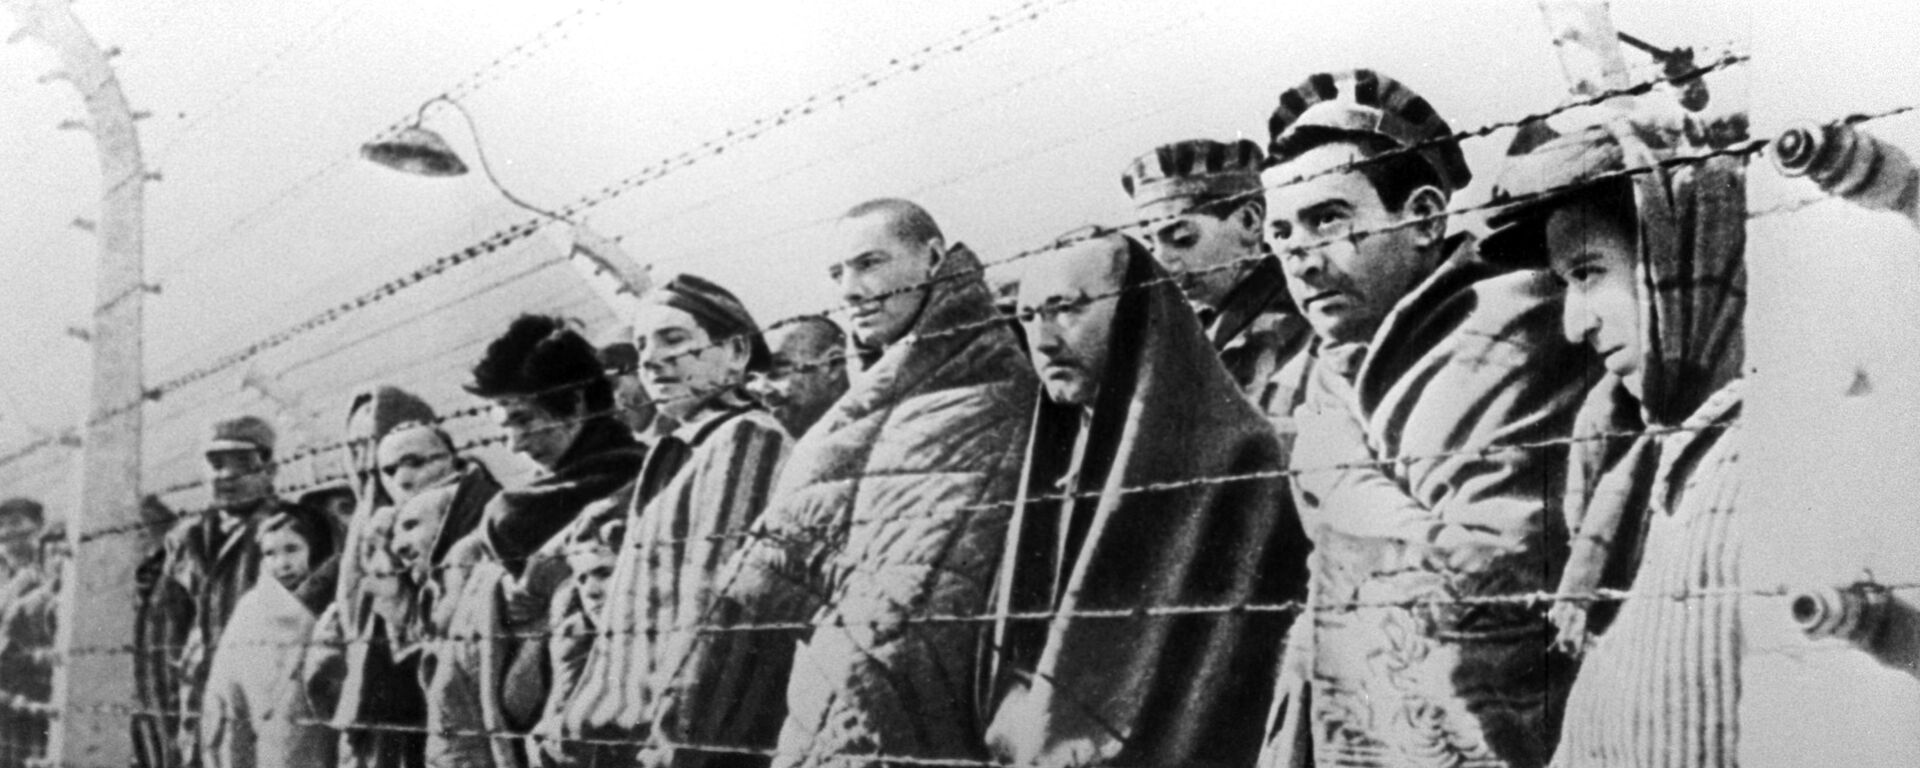 Uzniki konsentratsionnogo lagerya Osvensim, osvobojdennie voyskami Krasnoy armii v yanvare 1945 goda - Sputnik O‘zbekiston, 1920, 25.01.2020